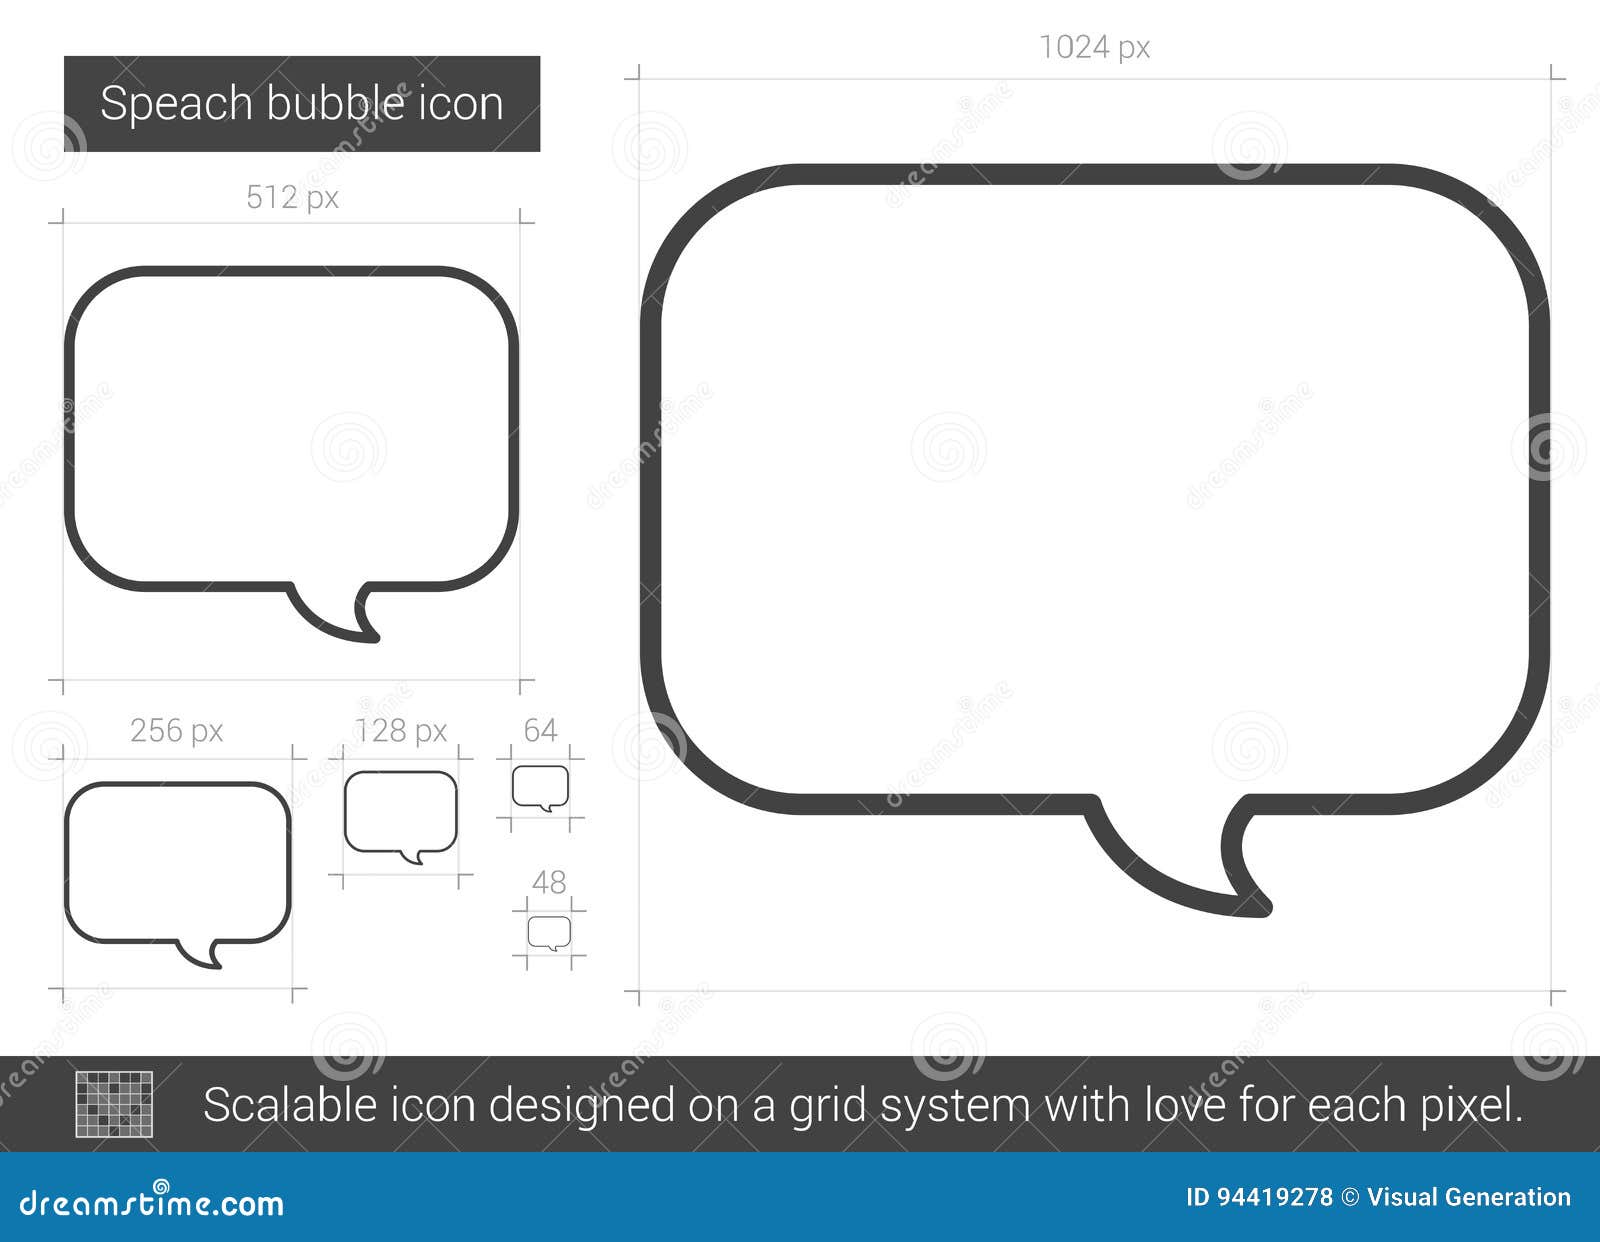 speach bubble line icon.